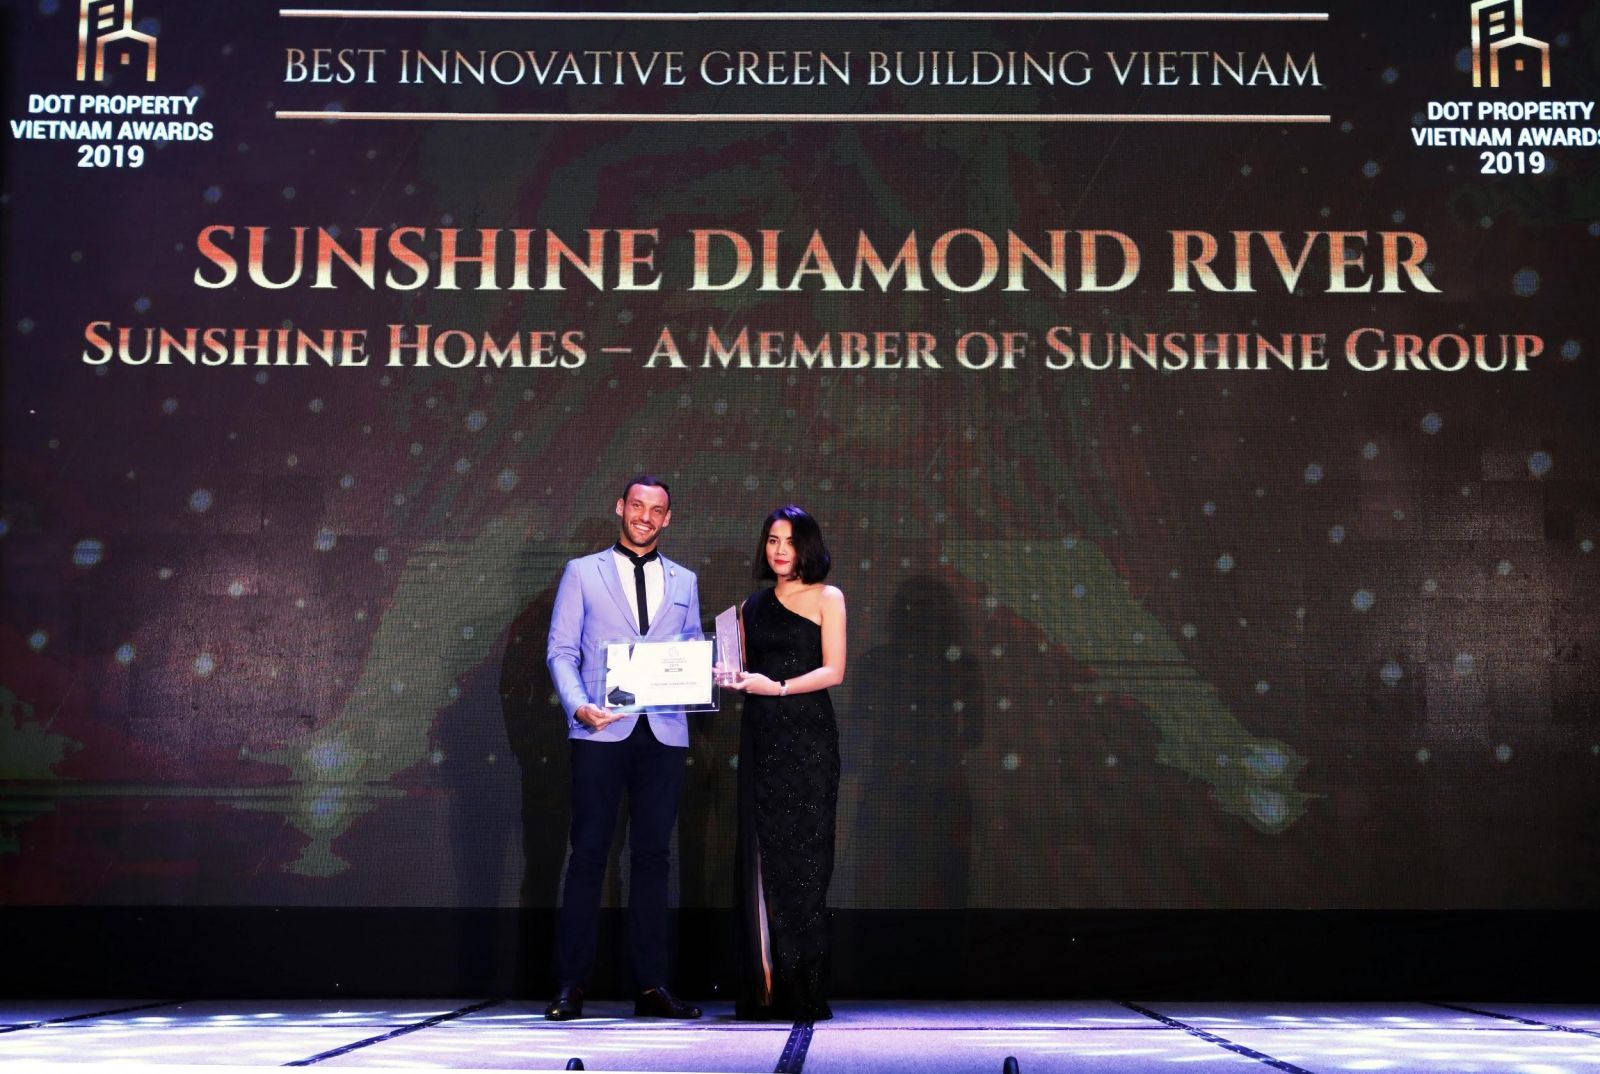 Bà Trần Cẩm Vân - Phó TGĐ Tập đoàn Sunshine nhận giải thưởng “Dự án công trình xanh đột phá nhất Việt Nam” dành cho dự án Sunshine Diamond River 